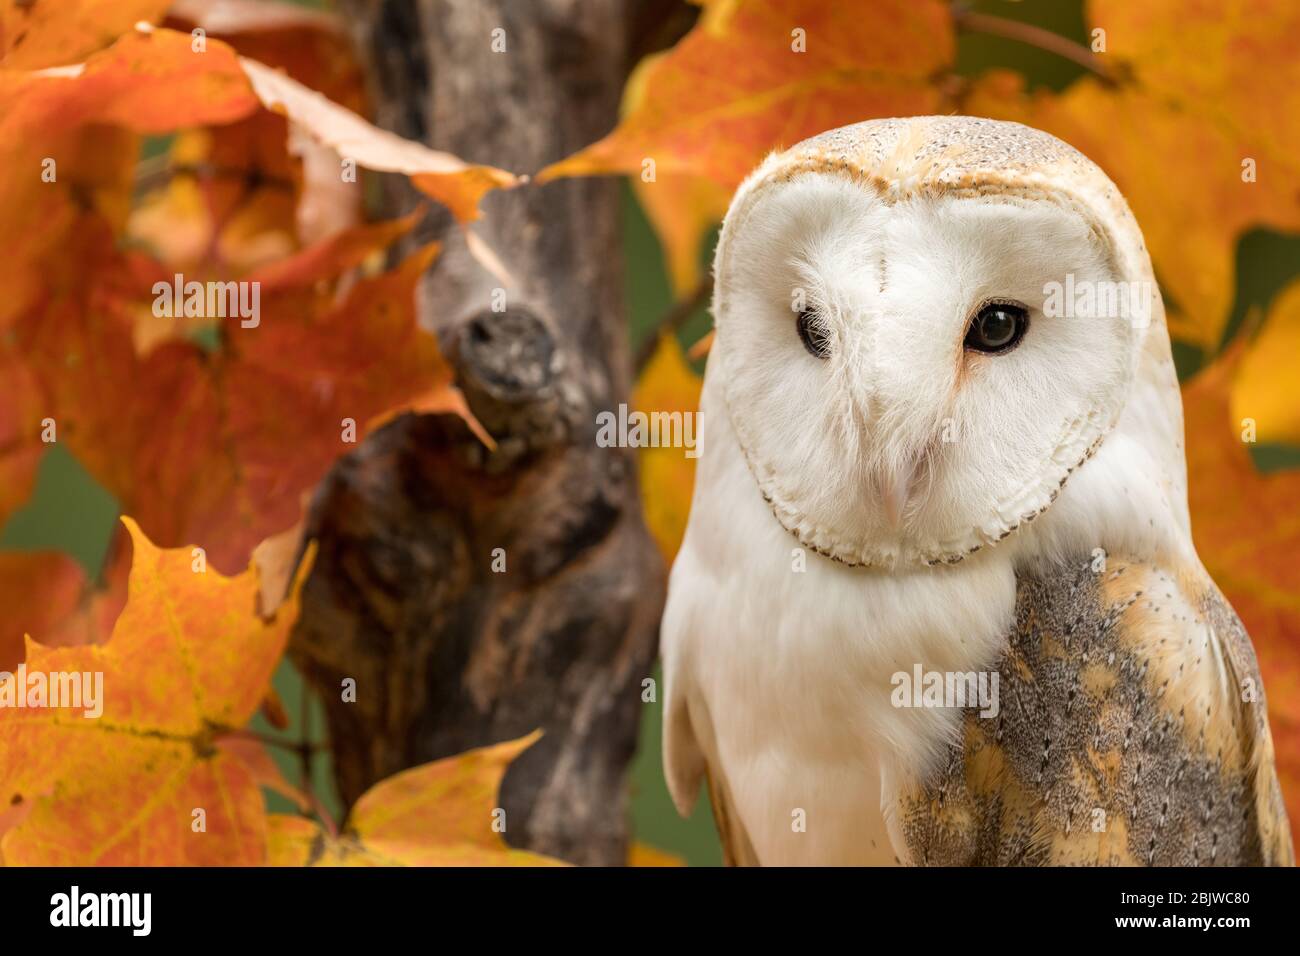 Barn owl in an autumn maple tree Stock Photo